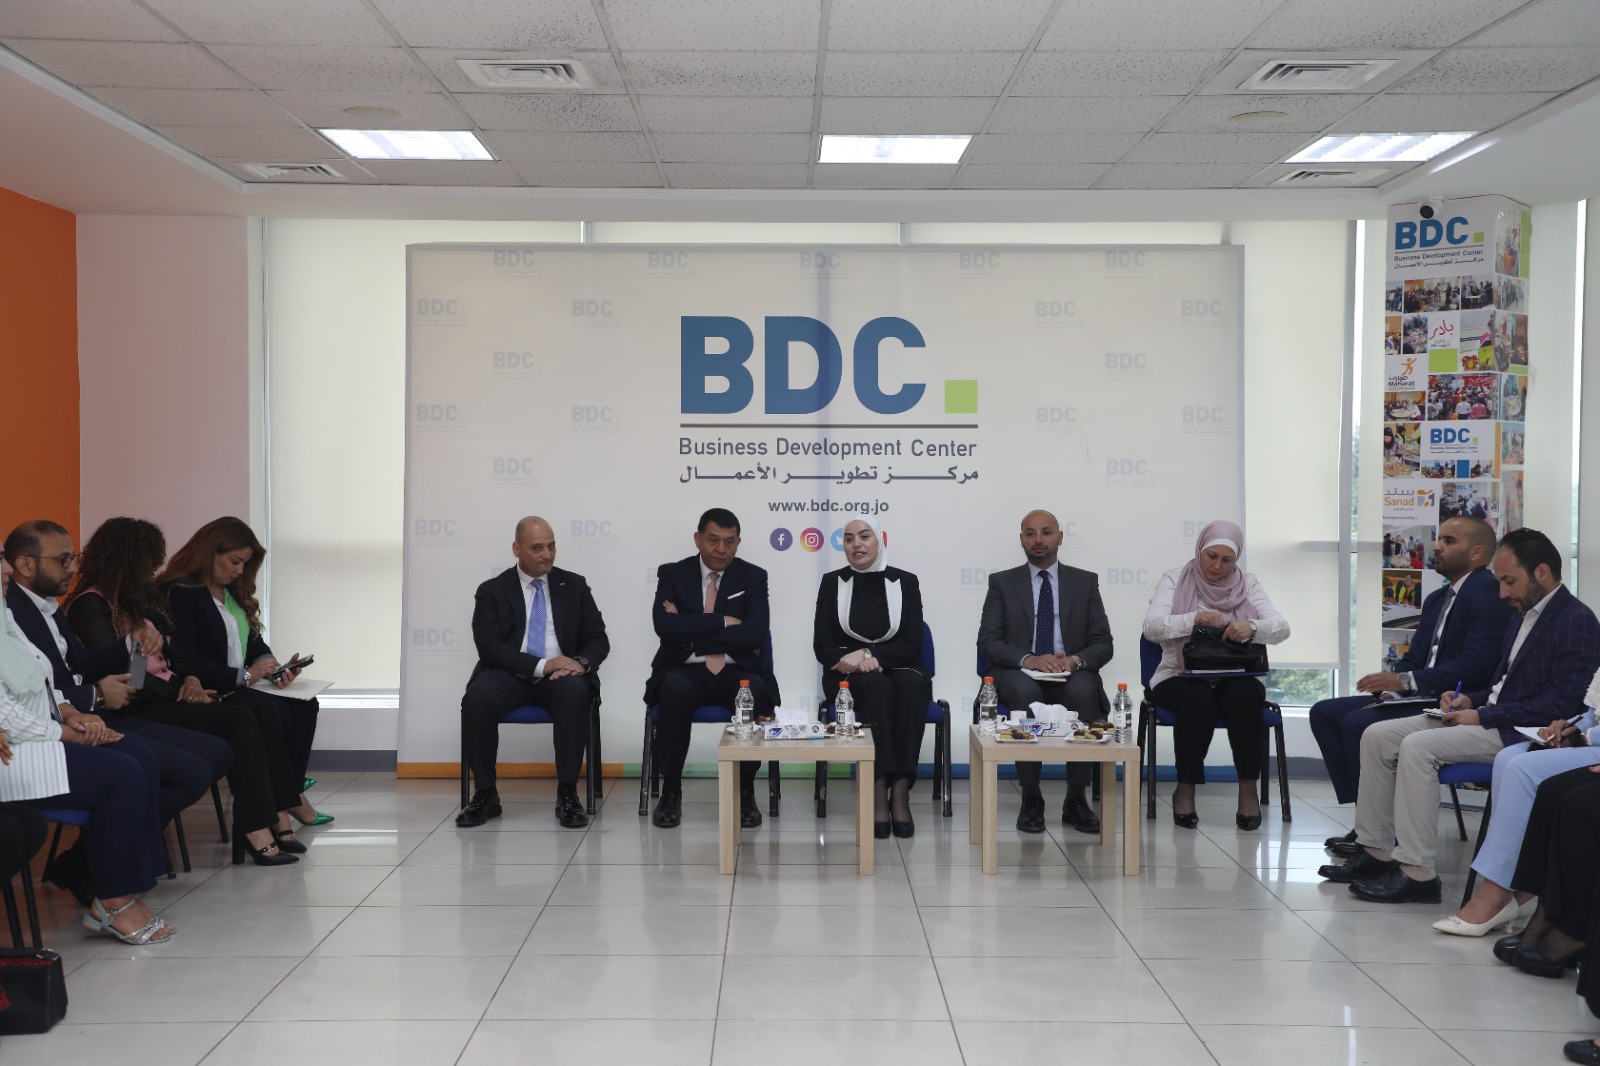 اتفاقية تعاون بين مركز تطوير الأعمال - BDC ووزارة التنمية الاجتماعية لتمكين الشباب في المناطق الأقل حظاً